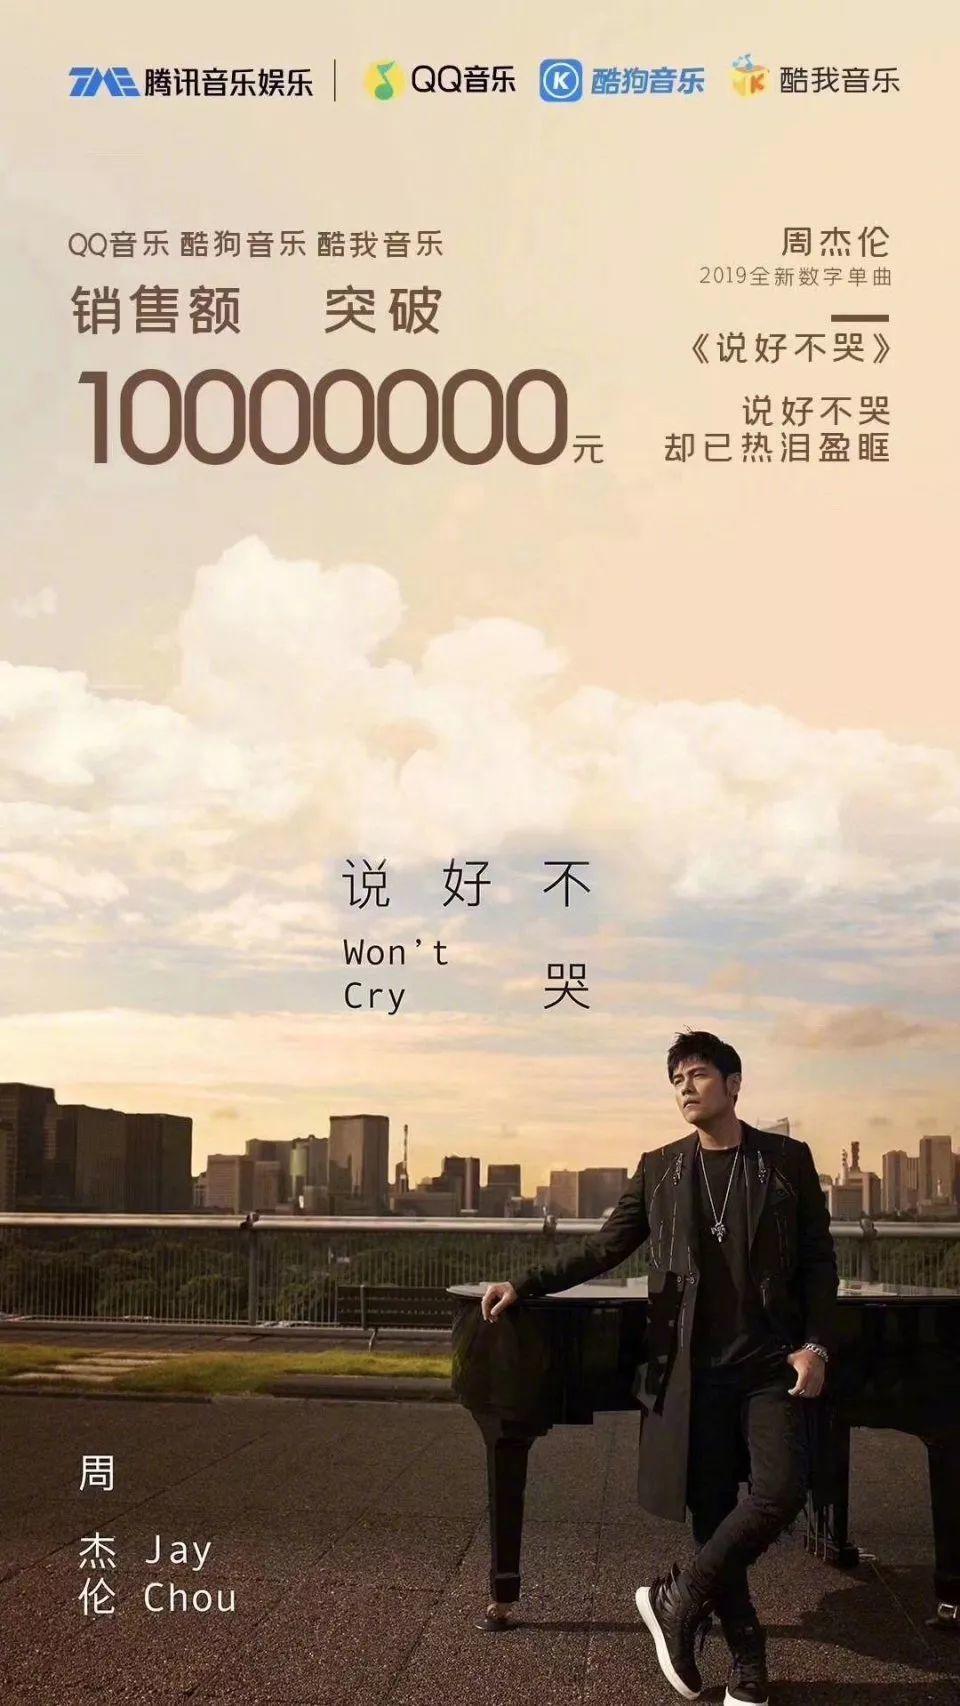 「說好不哭」40小時銷售額破2000萬，起底音樂天王周杰倫的商業版圖